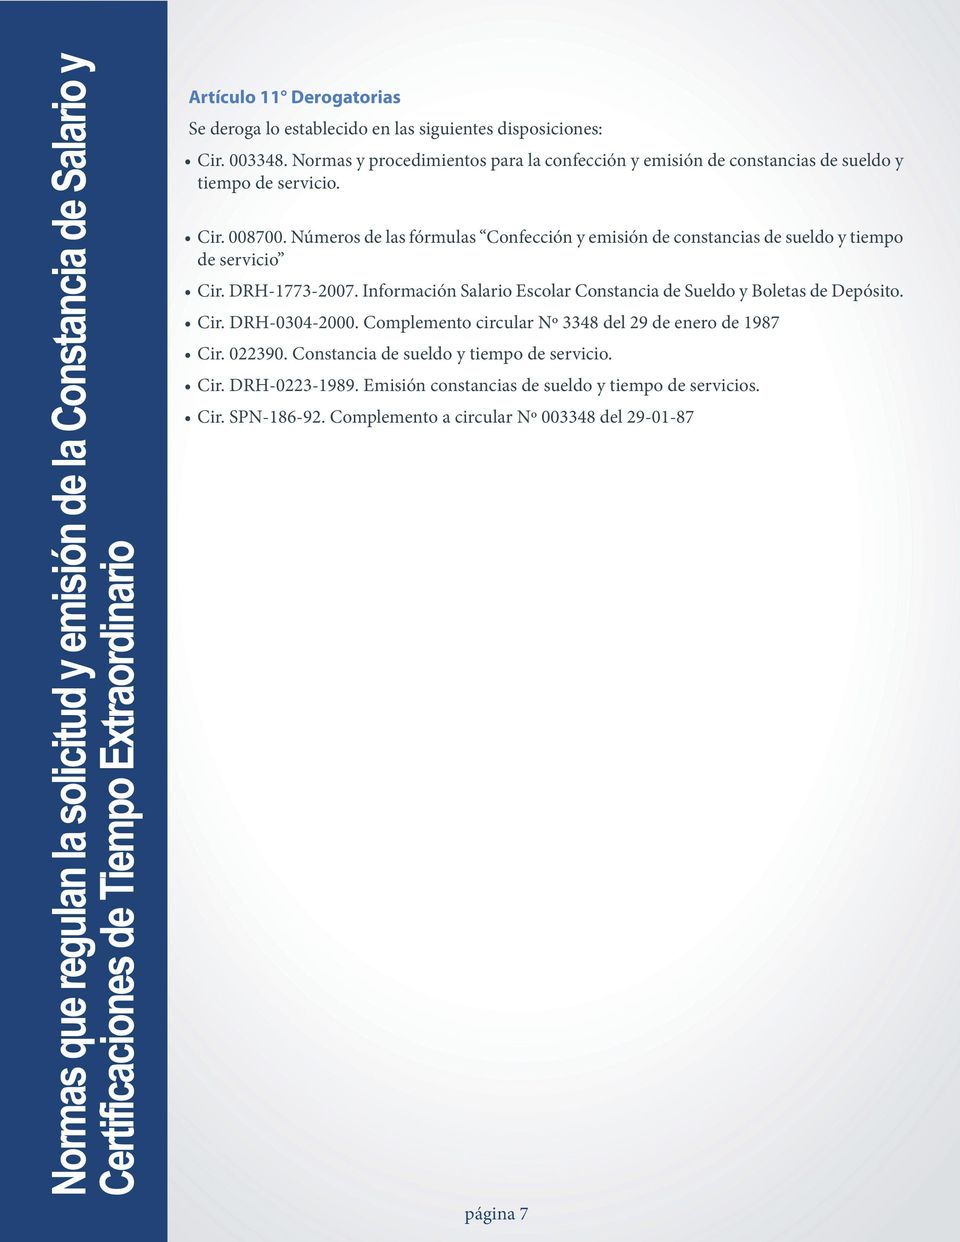 Números de las fórmulas Confección y emisión de constancias de sueldo y tiempo de servicio Cir. DRH-1773-2007.